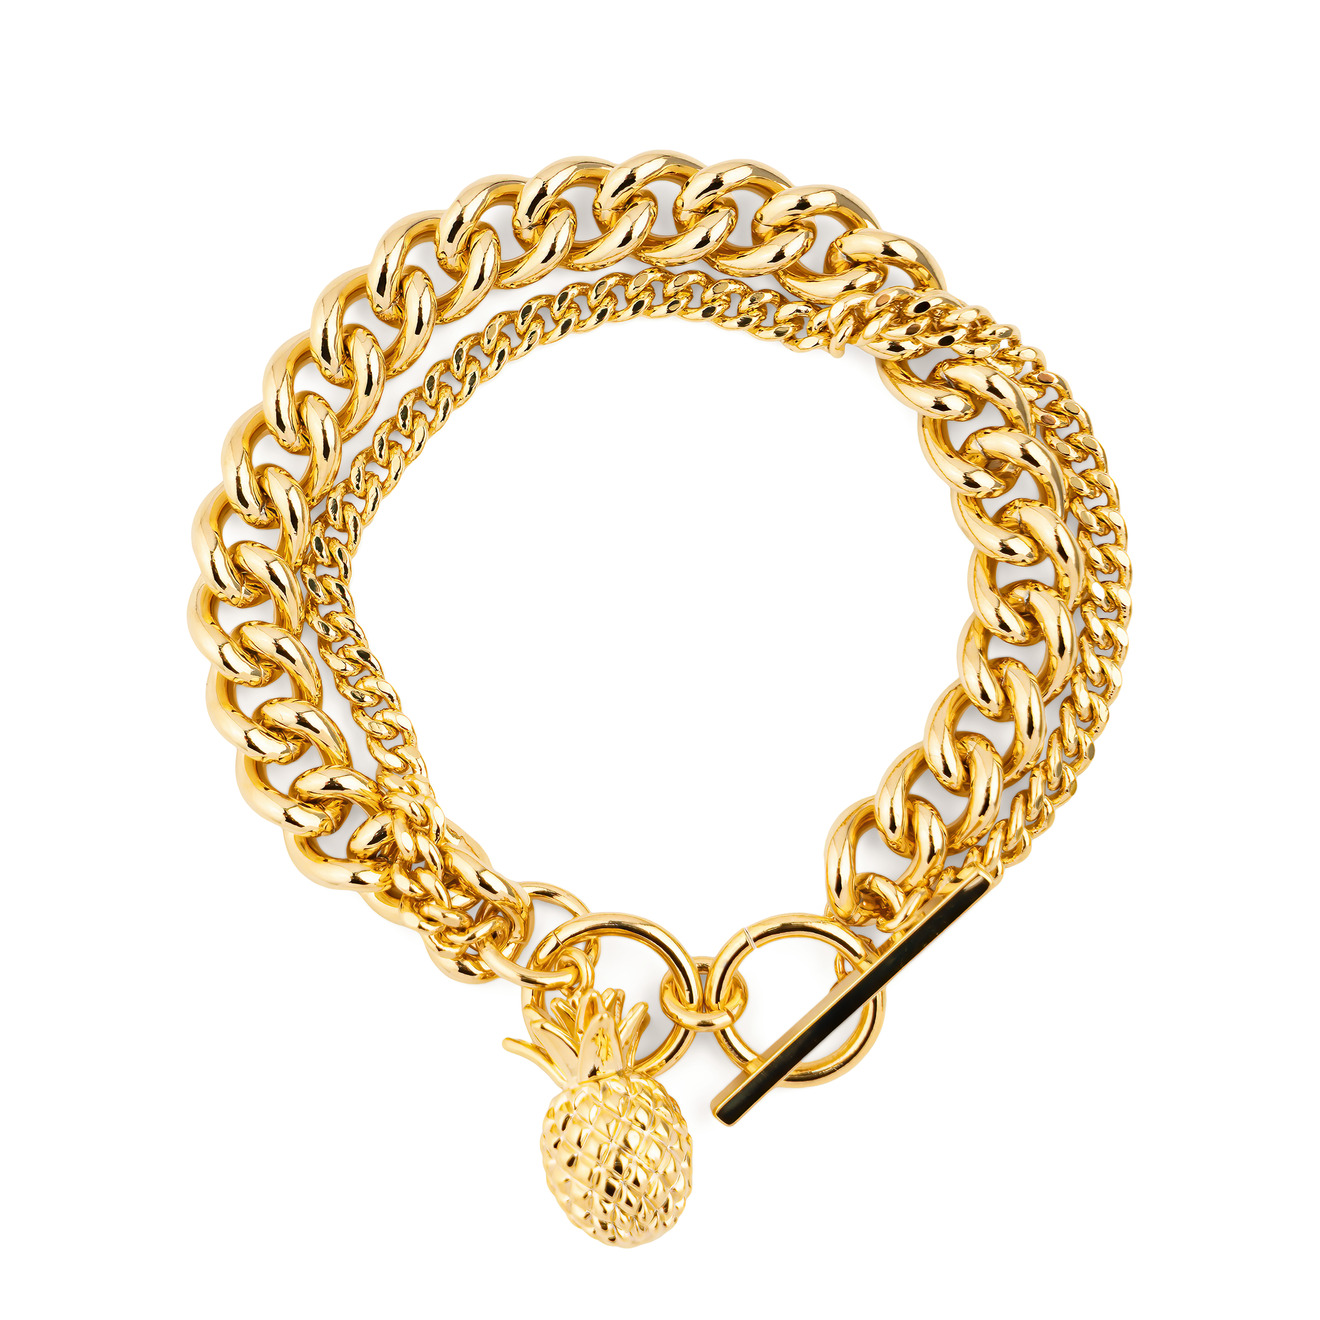 Free Form Jewelry Двойной золотистый браслет с ананасом браслет free form jewelry золотистый со спиралью 1 шт